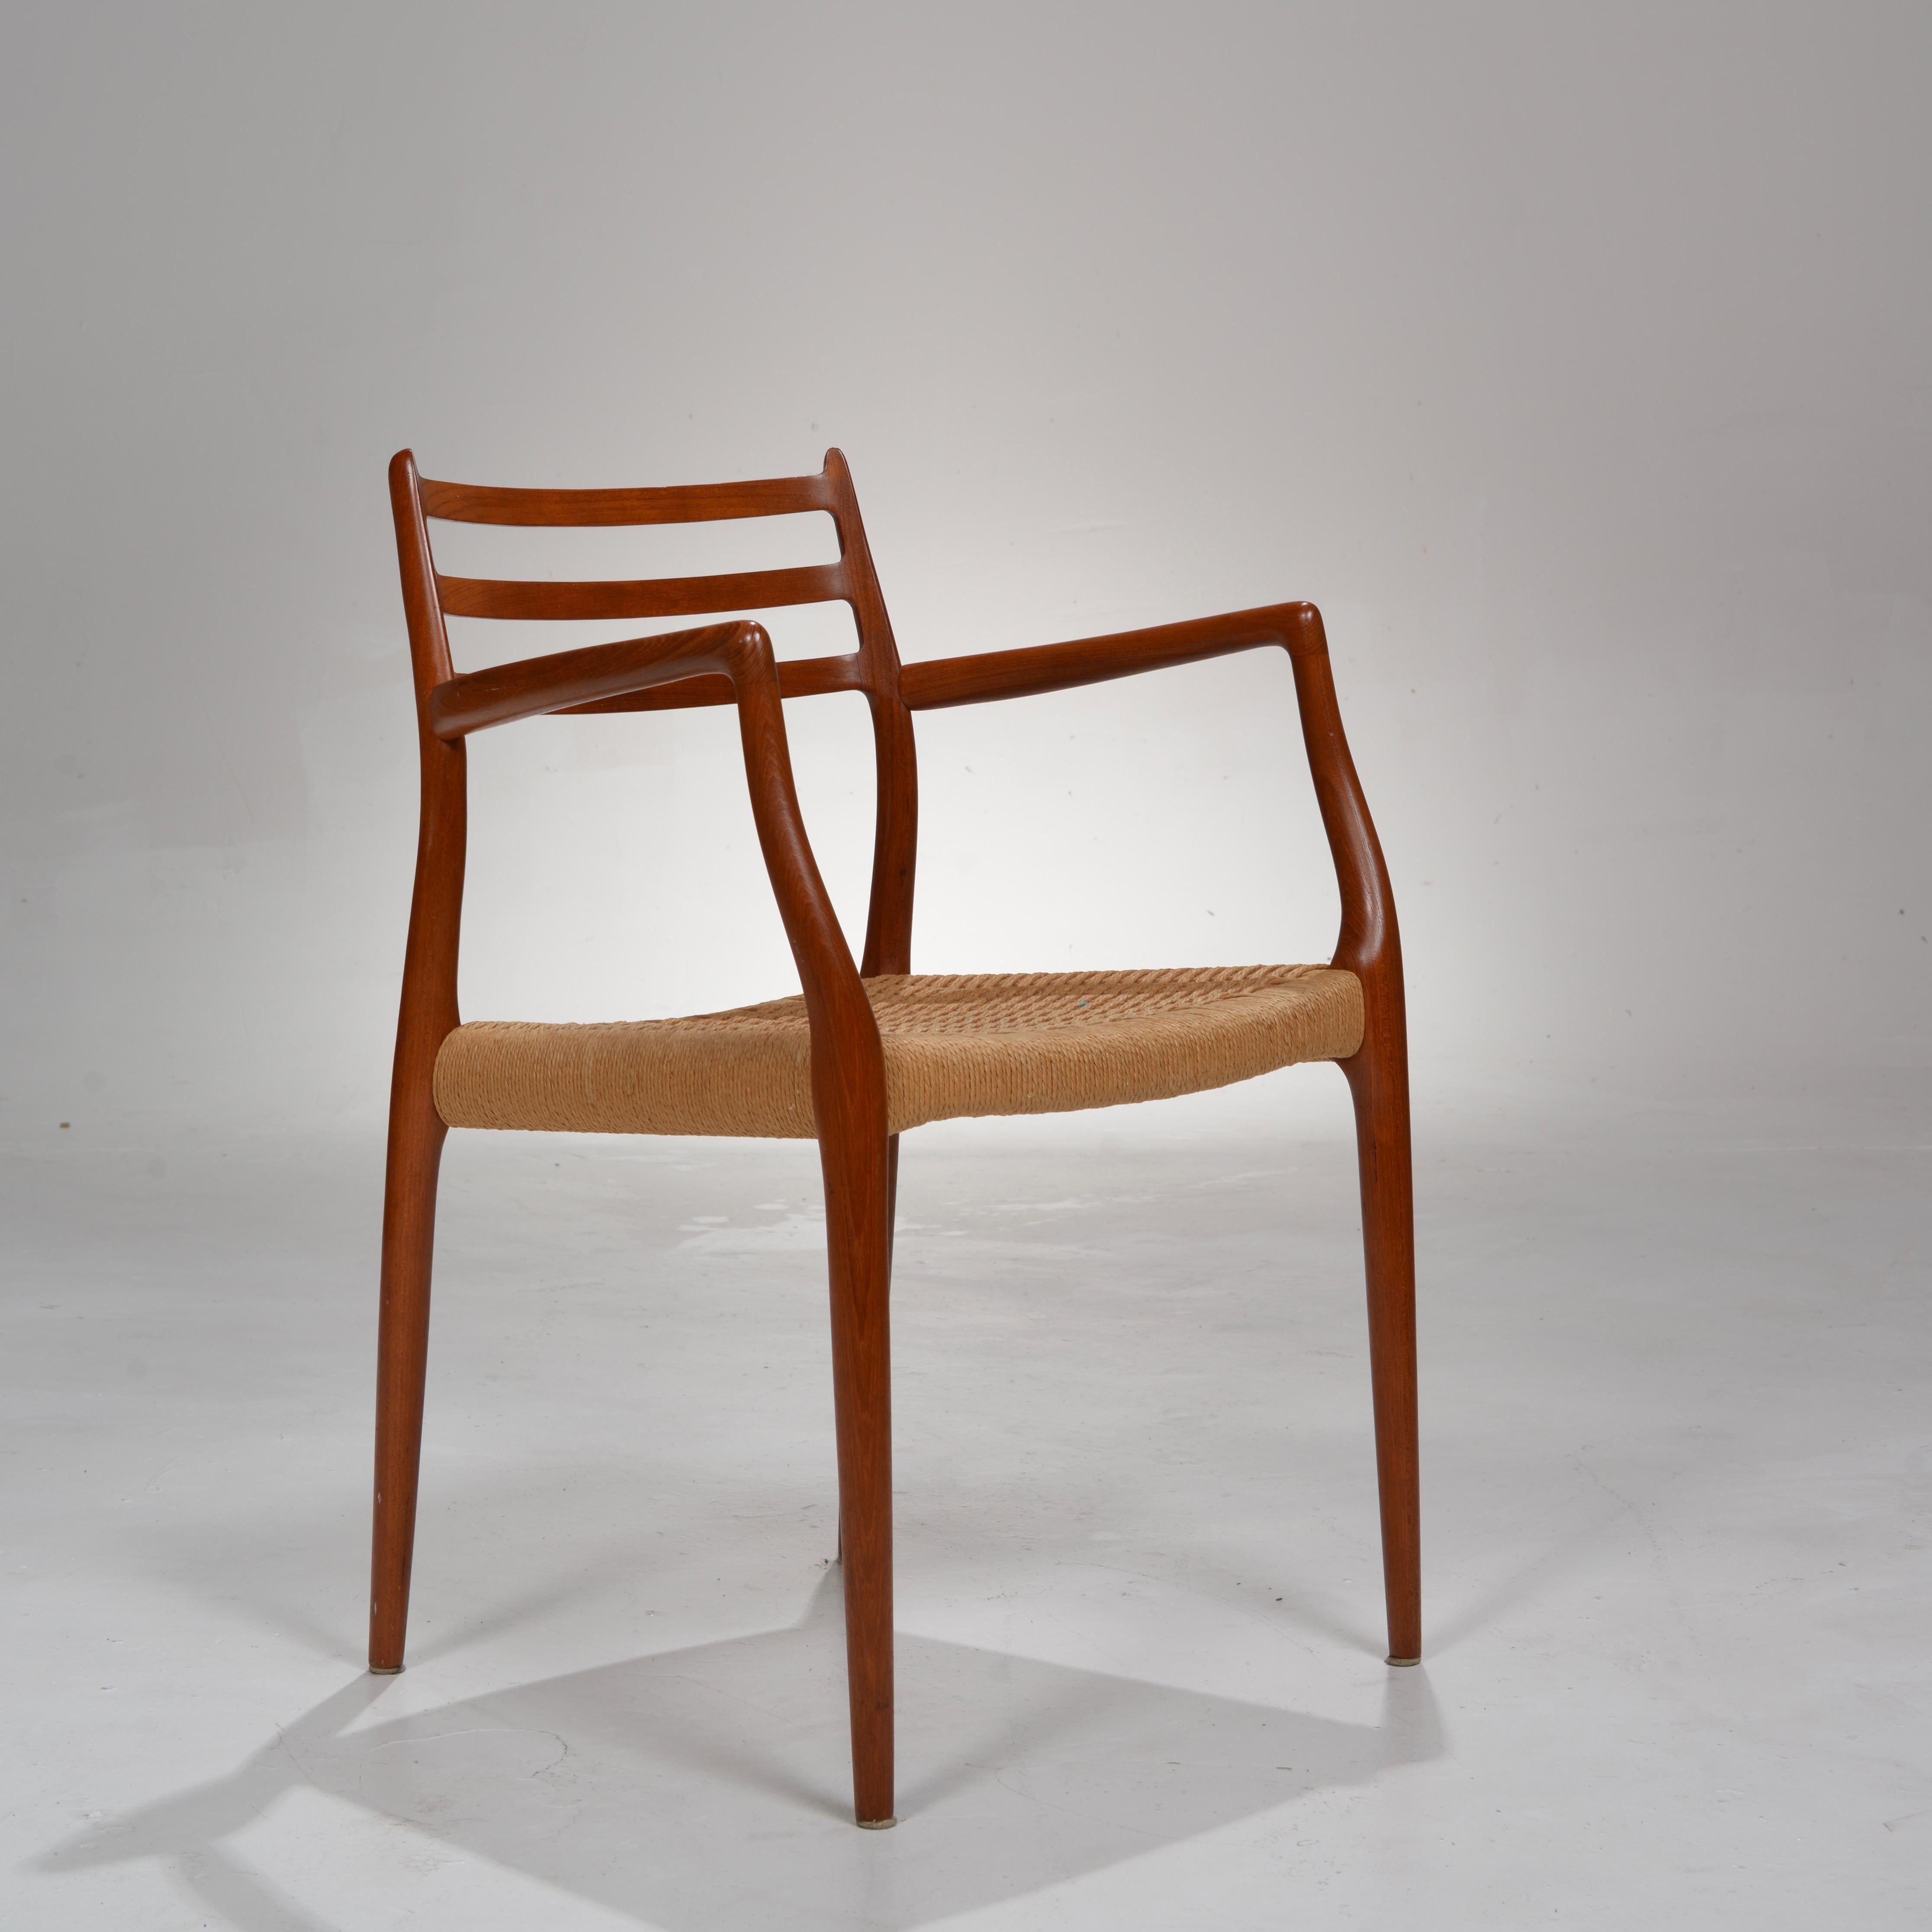 2 Stühle aus Teakholz, entworfen von Niels Otto Møller für J. L. Møllers Møbelfabrik. Das Modell 62 stammt aus dem Jahr 1967 und ist ein außergewöhnlicher Stuhl, der eine sehr bequeme Haltung und den für das große dänische Design typischen warmen,